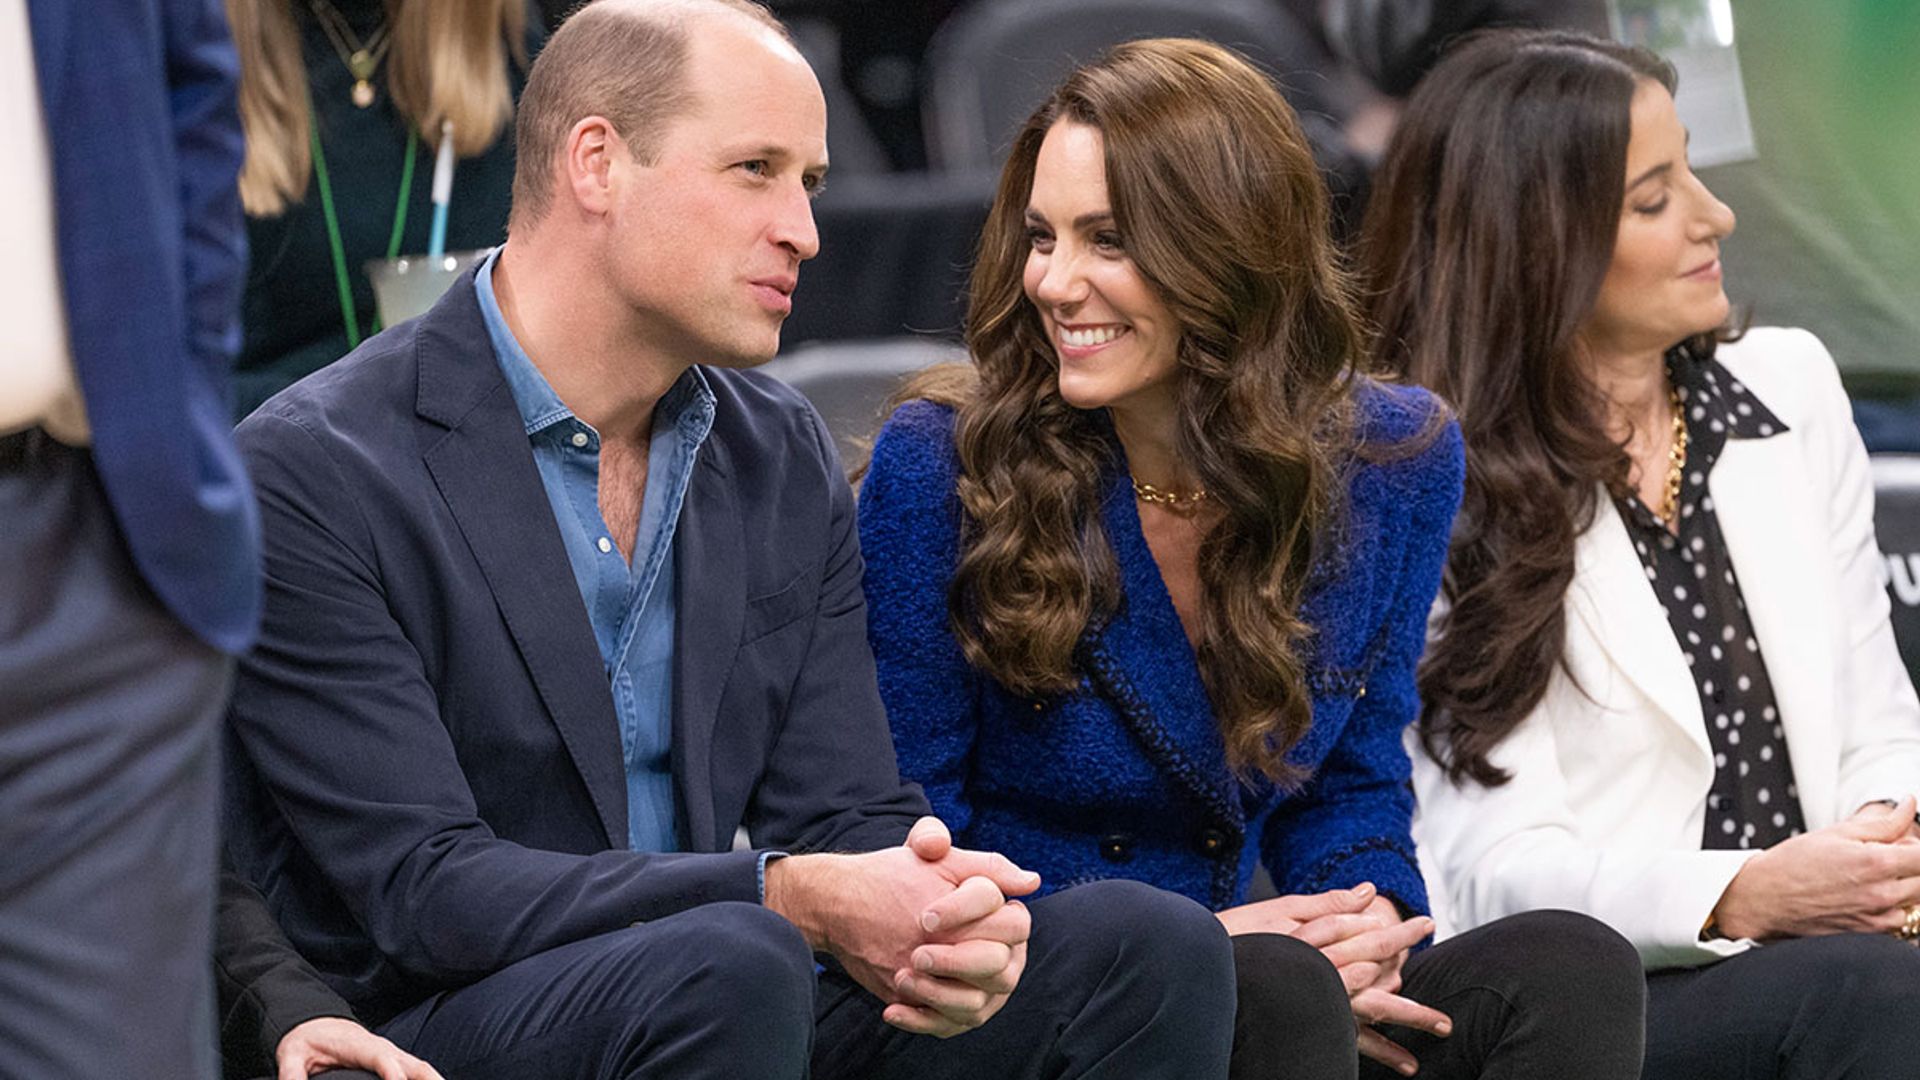 Prince William, Kate Middleton watch courtside as Boston Celtics take on Miami  Heat during their US trip